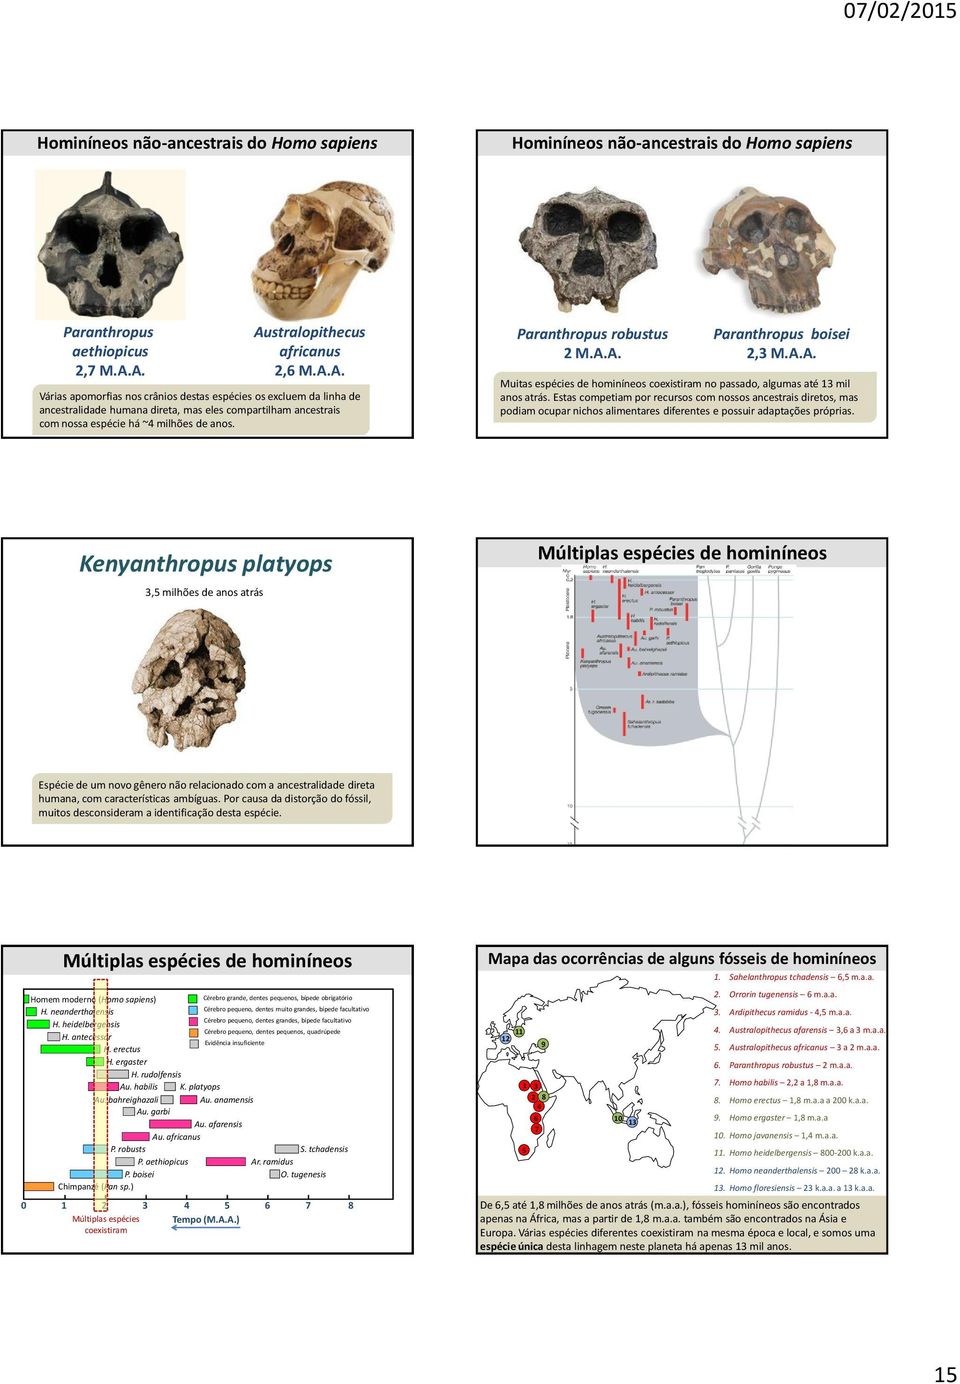 Paranthropus robustus 2 M.A.A. Paranthropus boisei 2,3 M.A.A. Muitas espécies de hominíneos coexistiram no passado, algumas até 13 mil anos atrás.